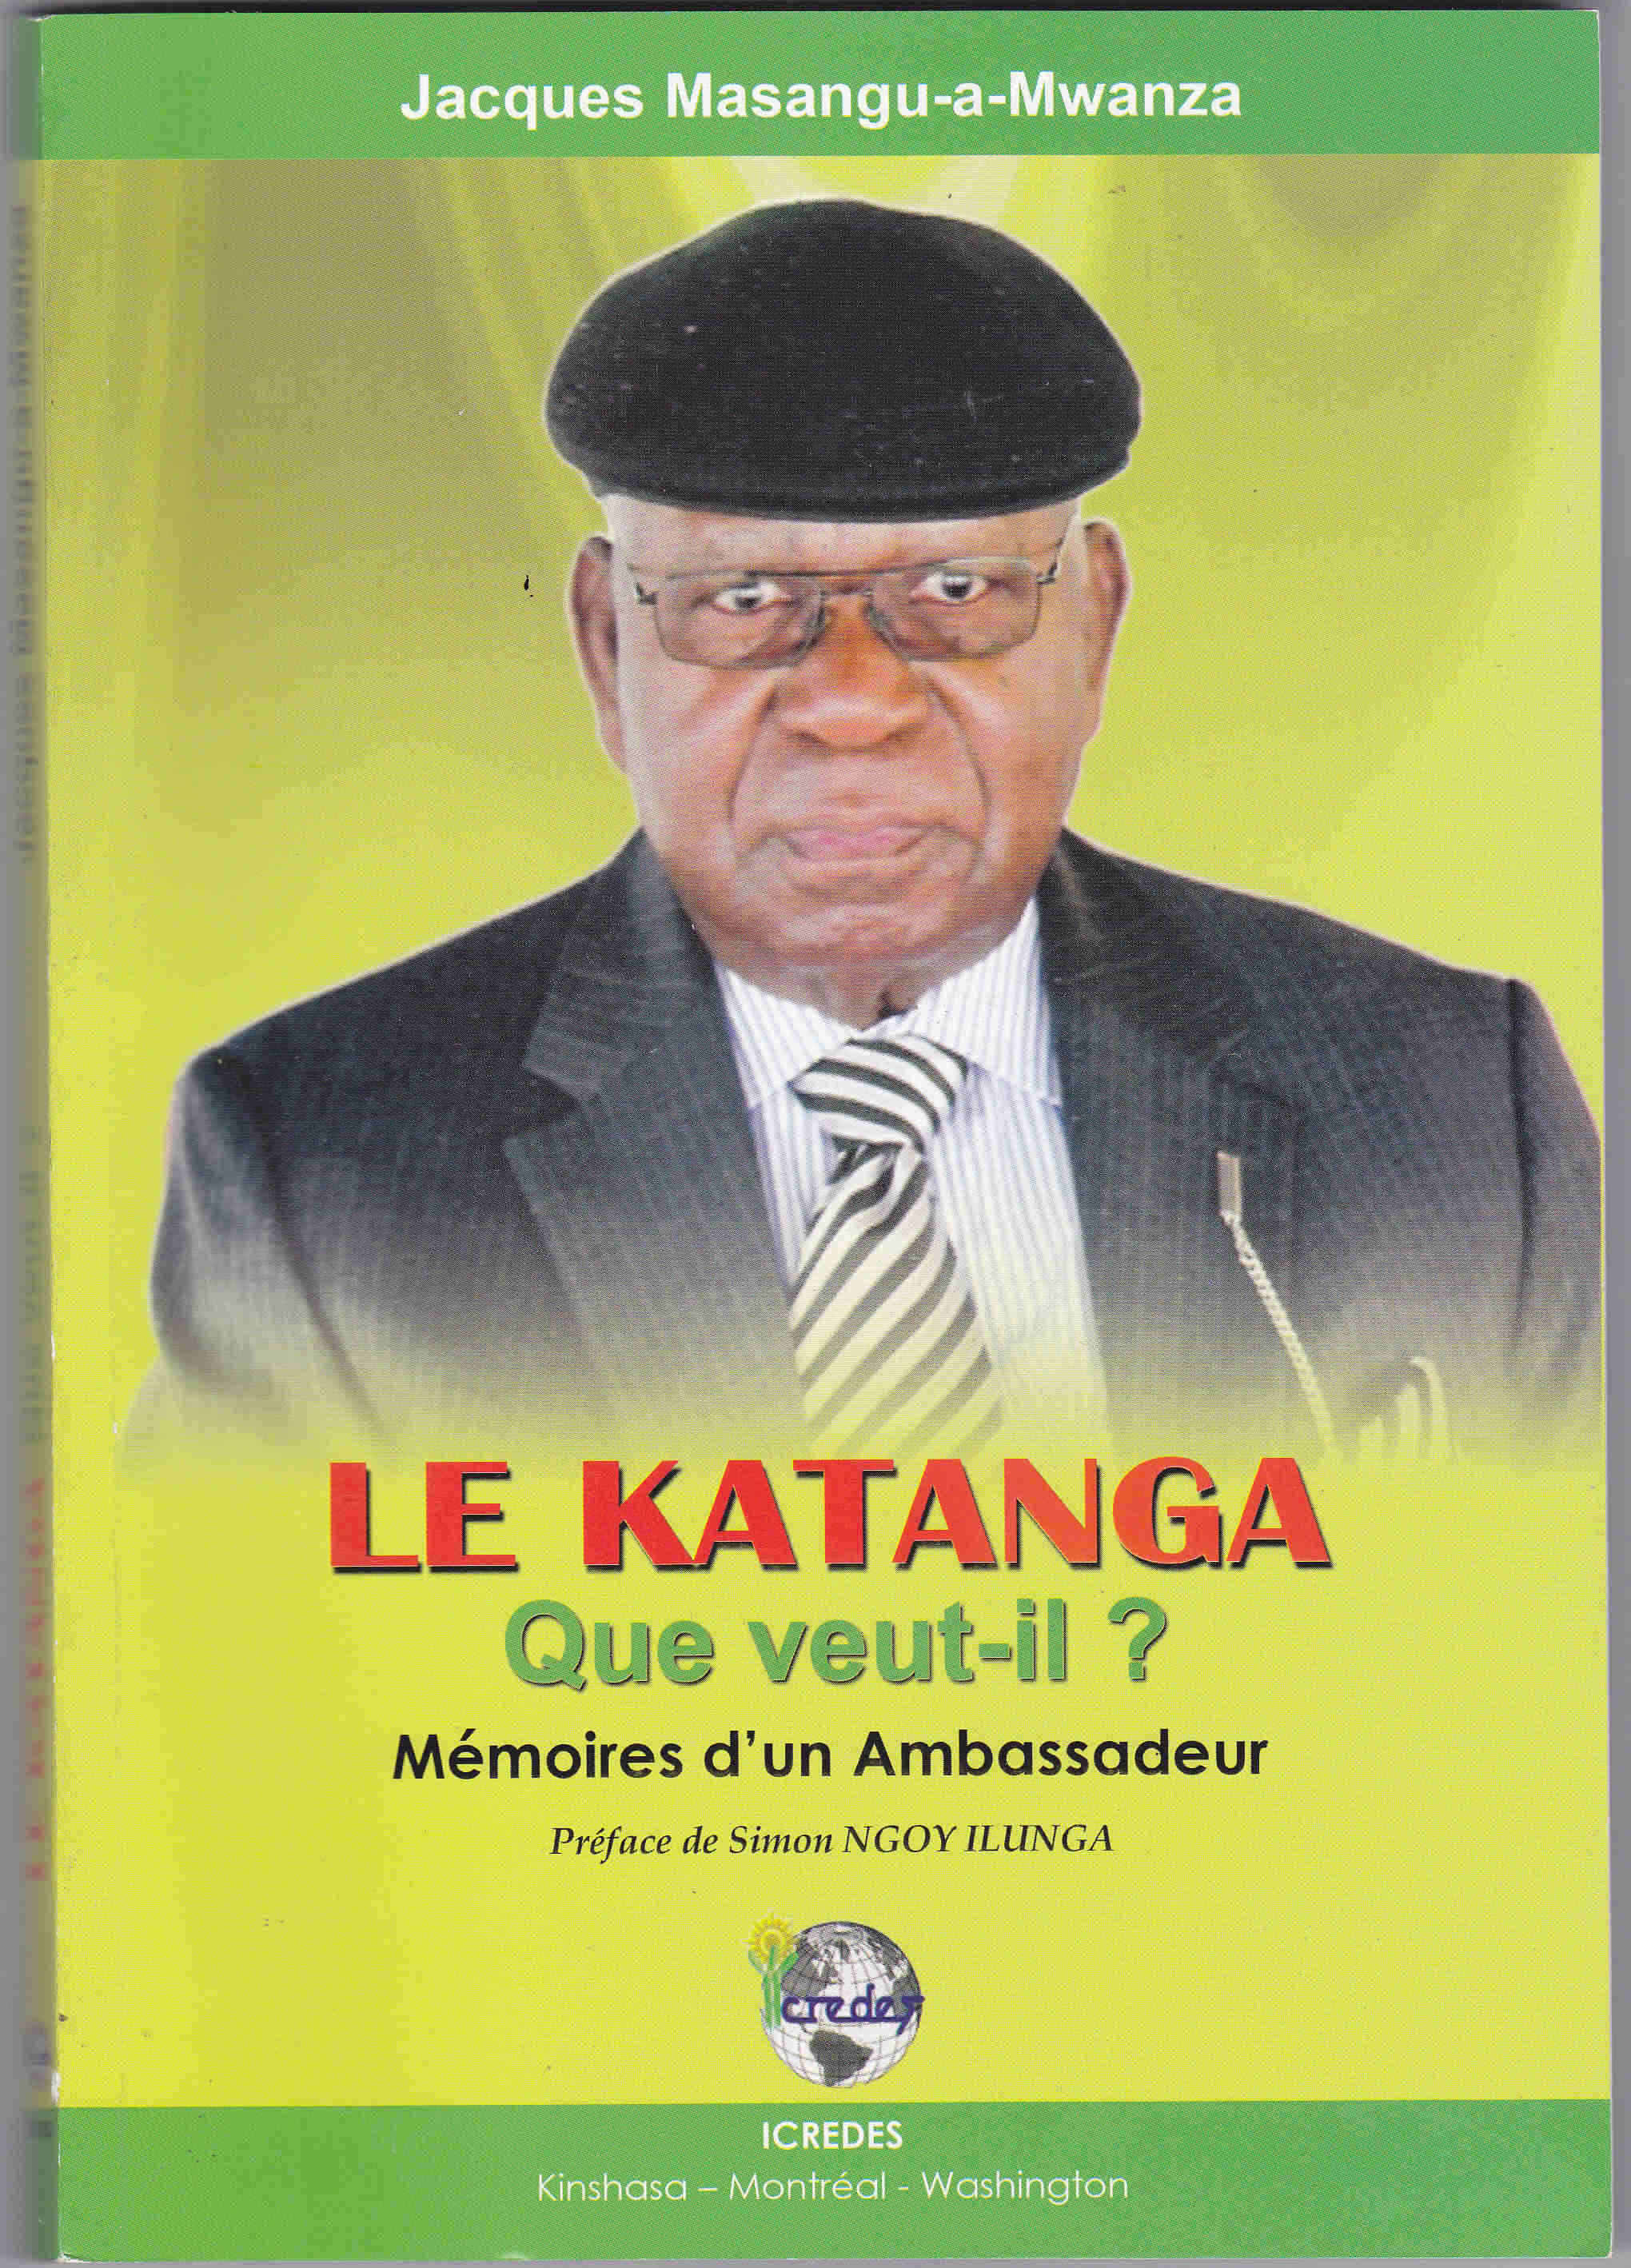 Le Katanga. Que veut-il? Mémoire d’un Ambassadeur